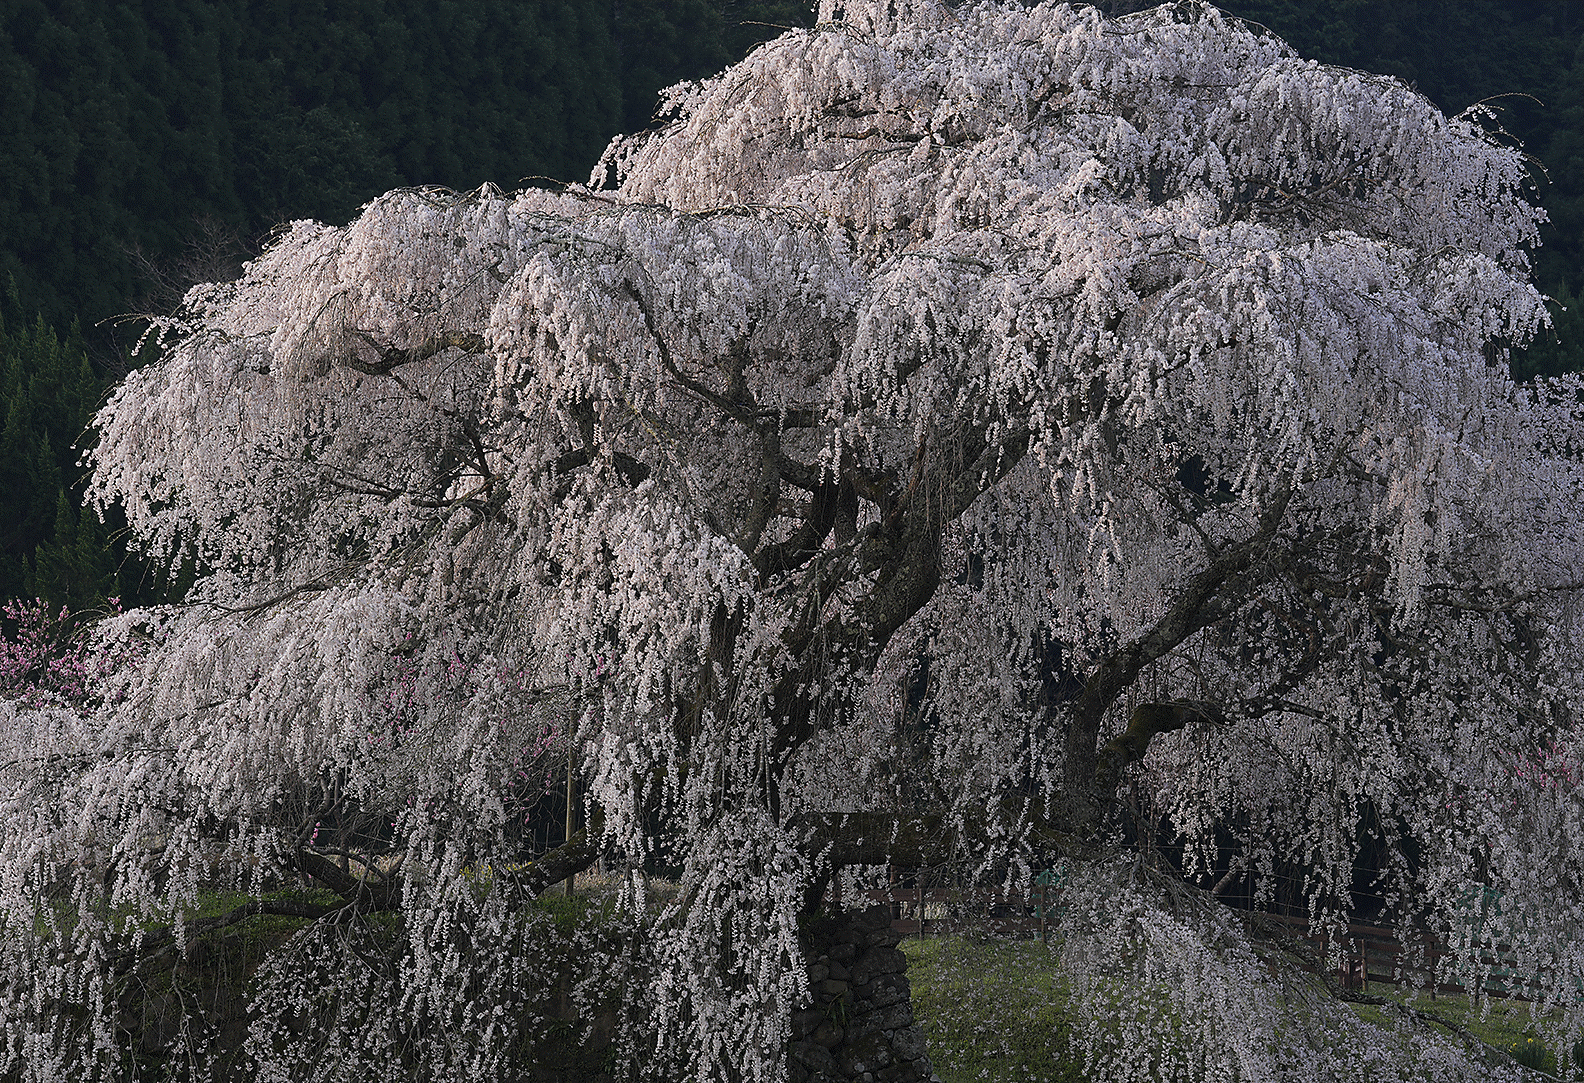 Slika cvjetova trešnje u punom cvatu